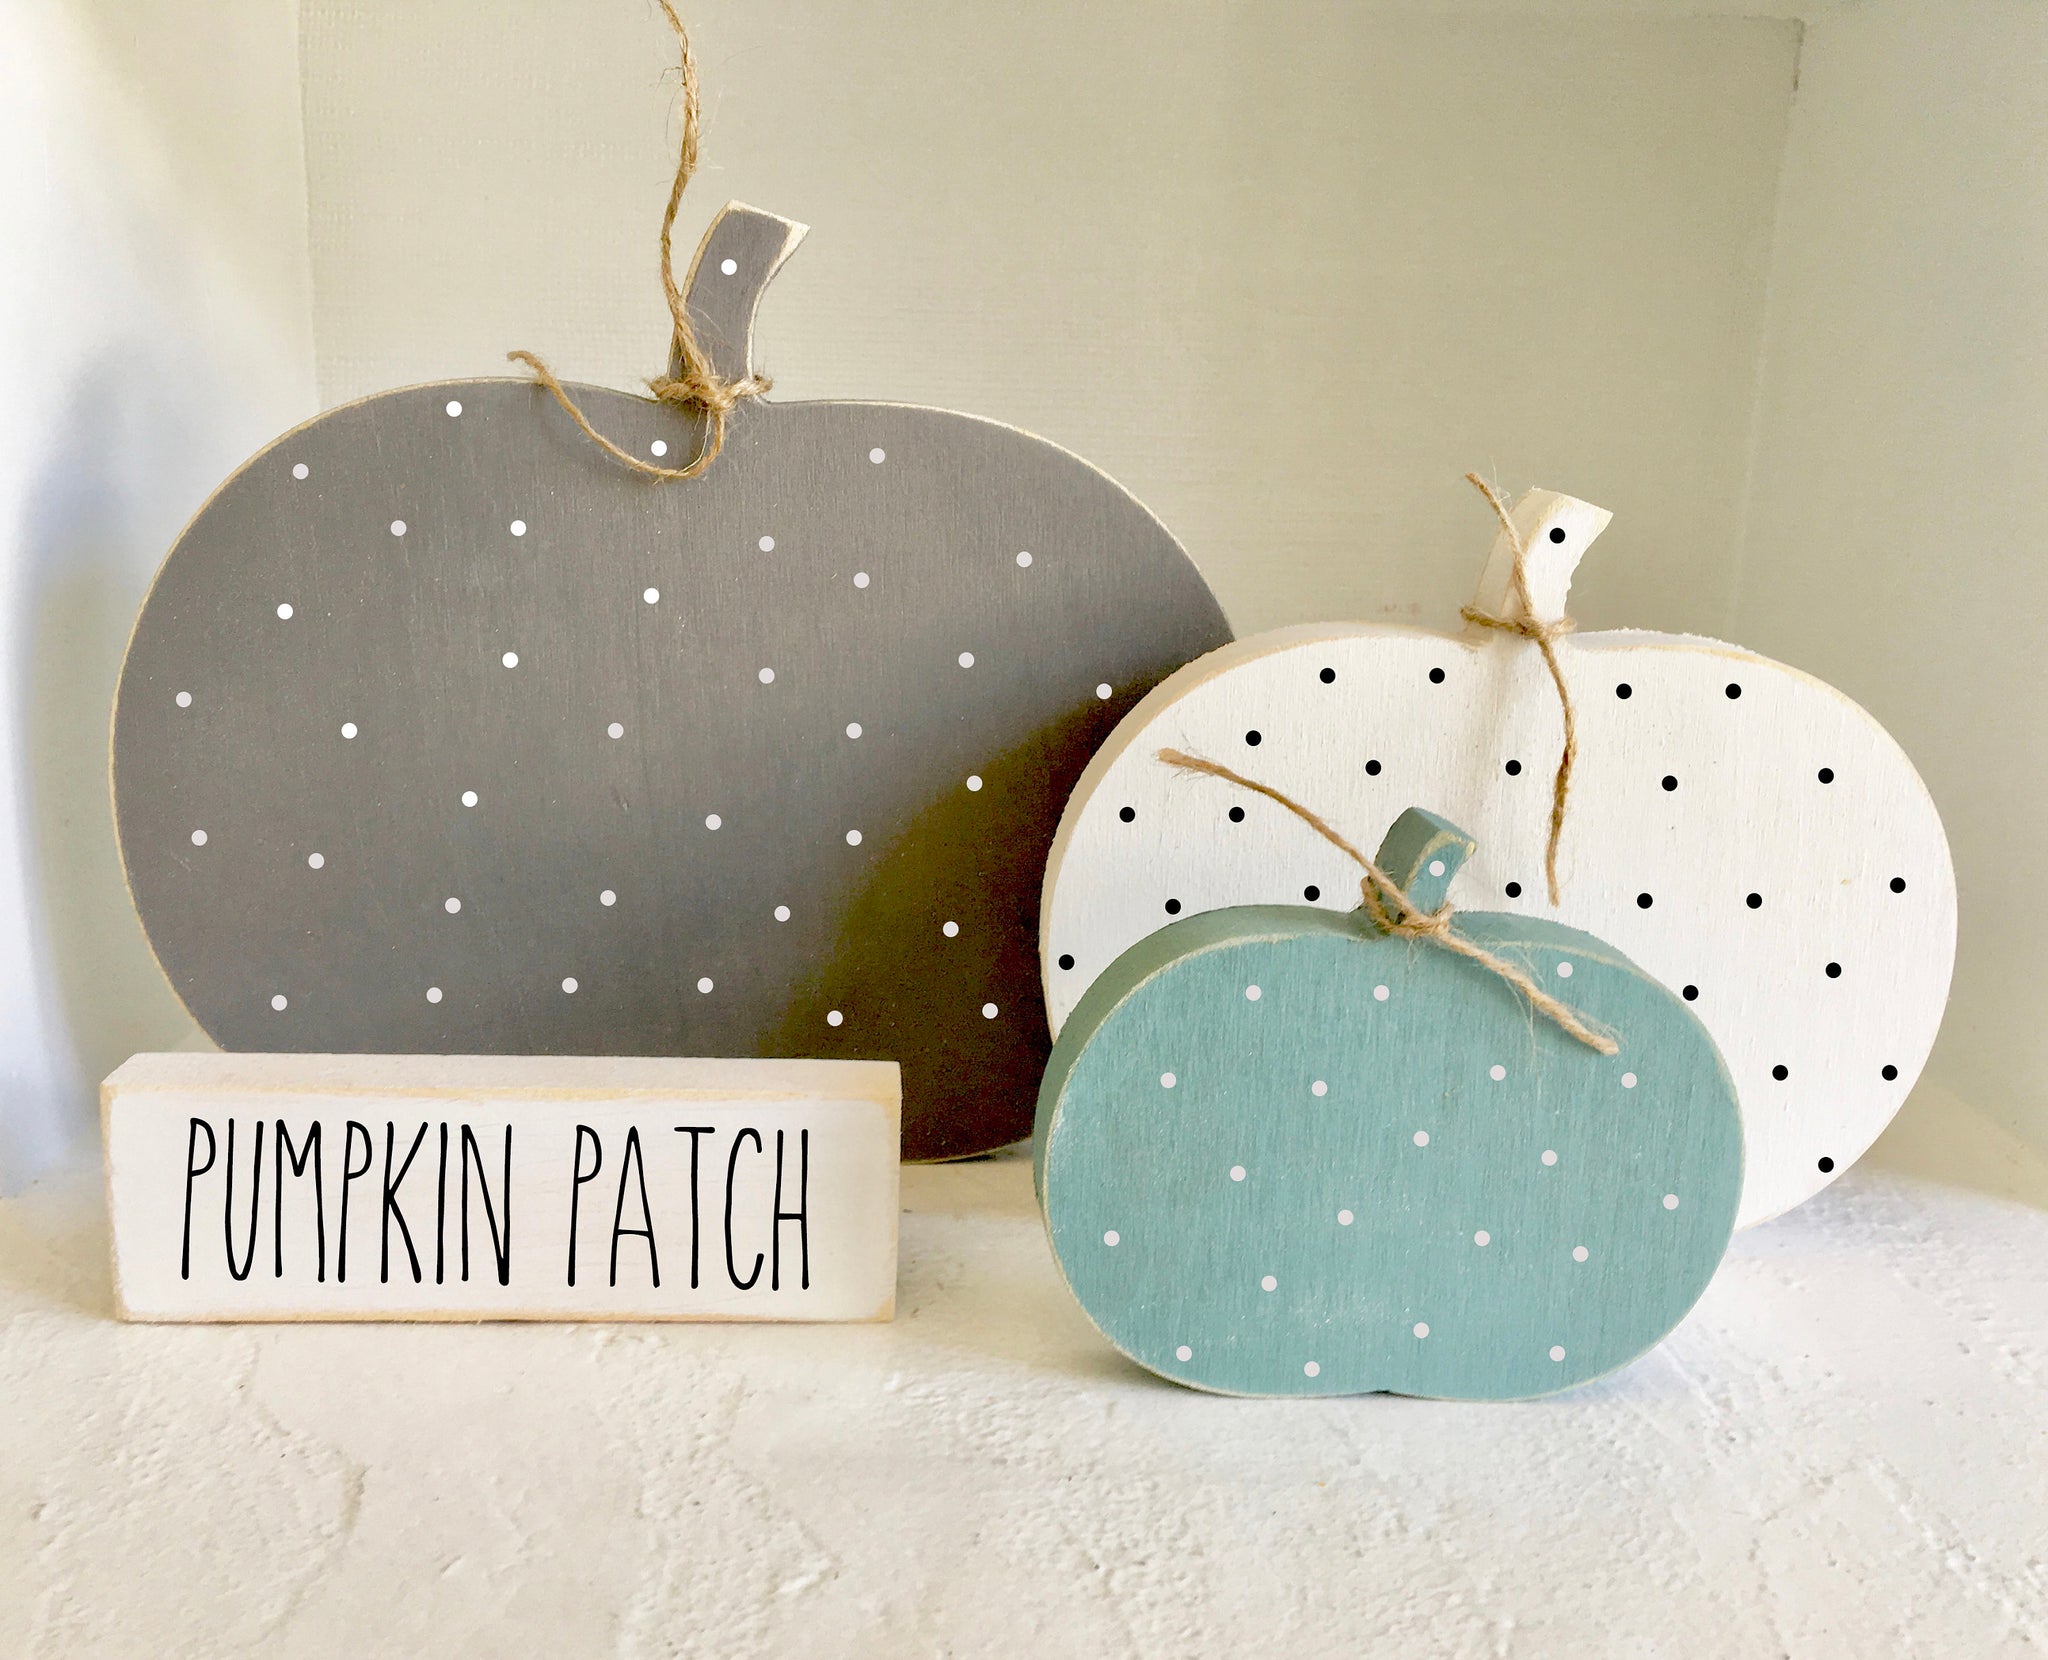 Wooden pumpkins, Tiered tray decor, Gray pumpkin, Polka dot, Fall decor, Autumn, rustic, Farmhouse, Wood pumpkins, Pumpkin patch sign